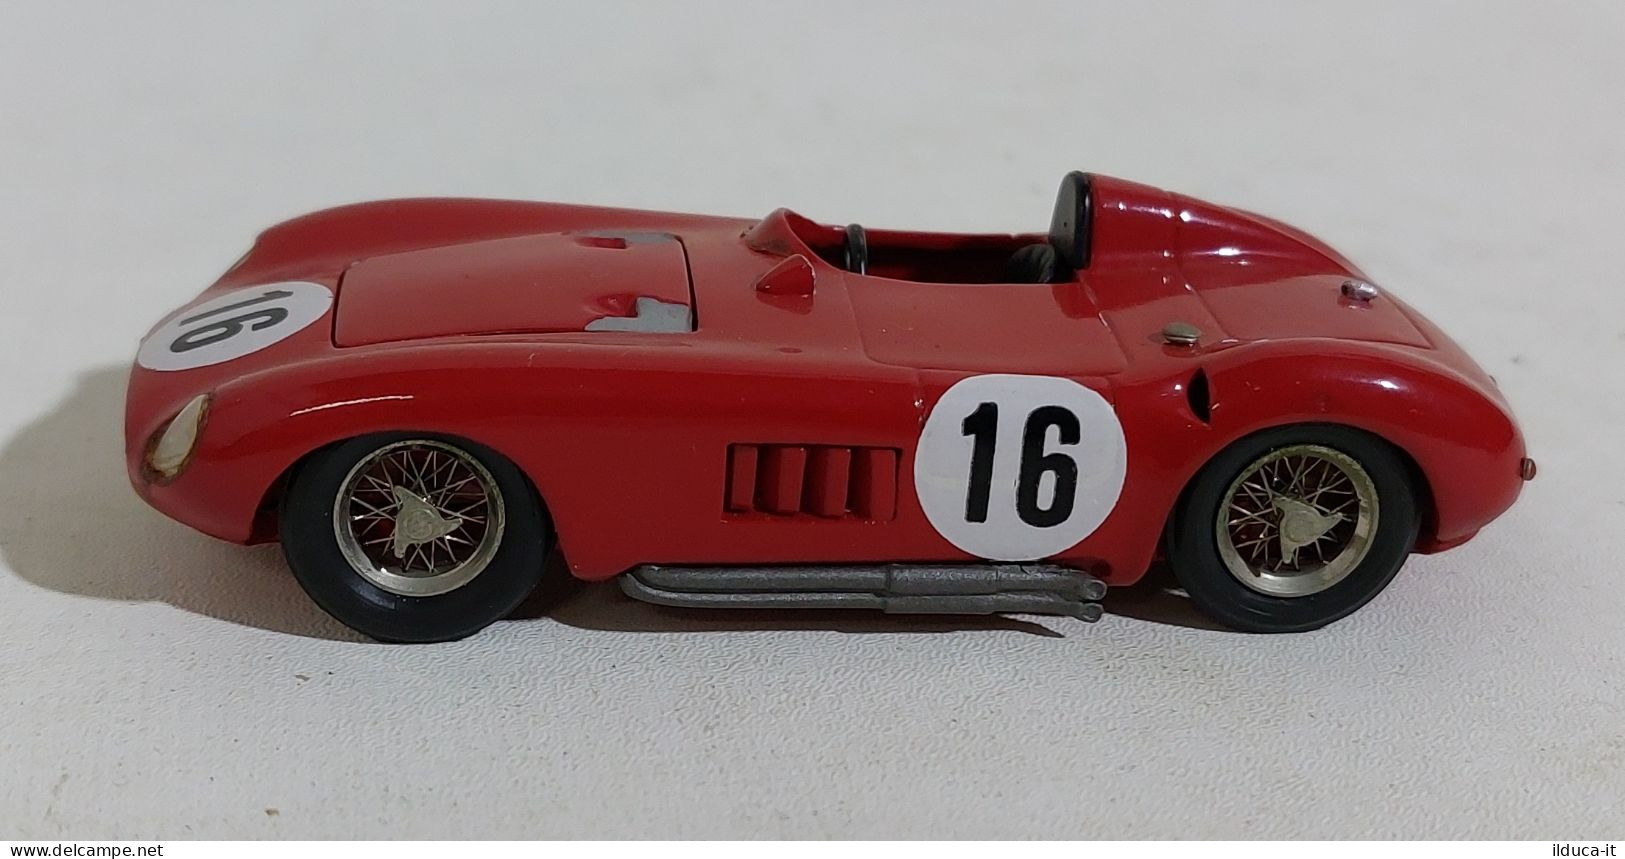 60693 ABC 1/43 Carlo Brianza - Maserati 300S Le Mans 1955 - Prototipo V. Bosica